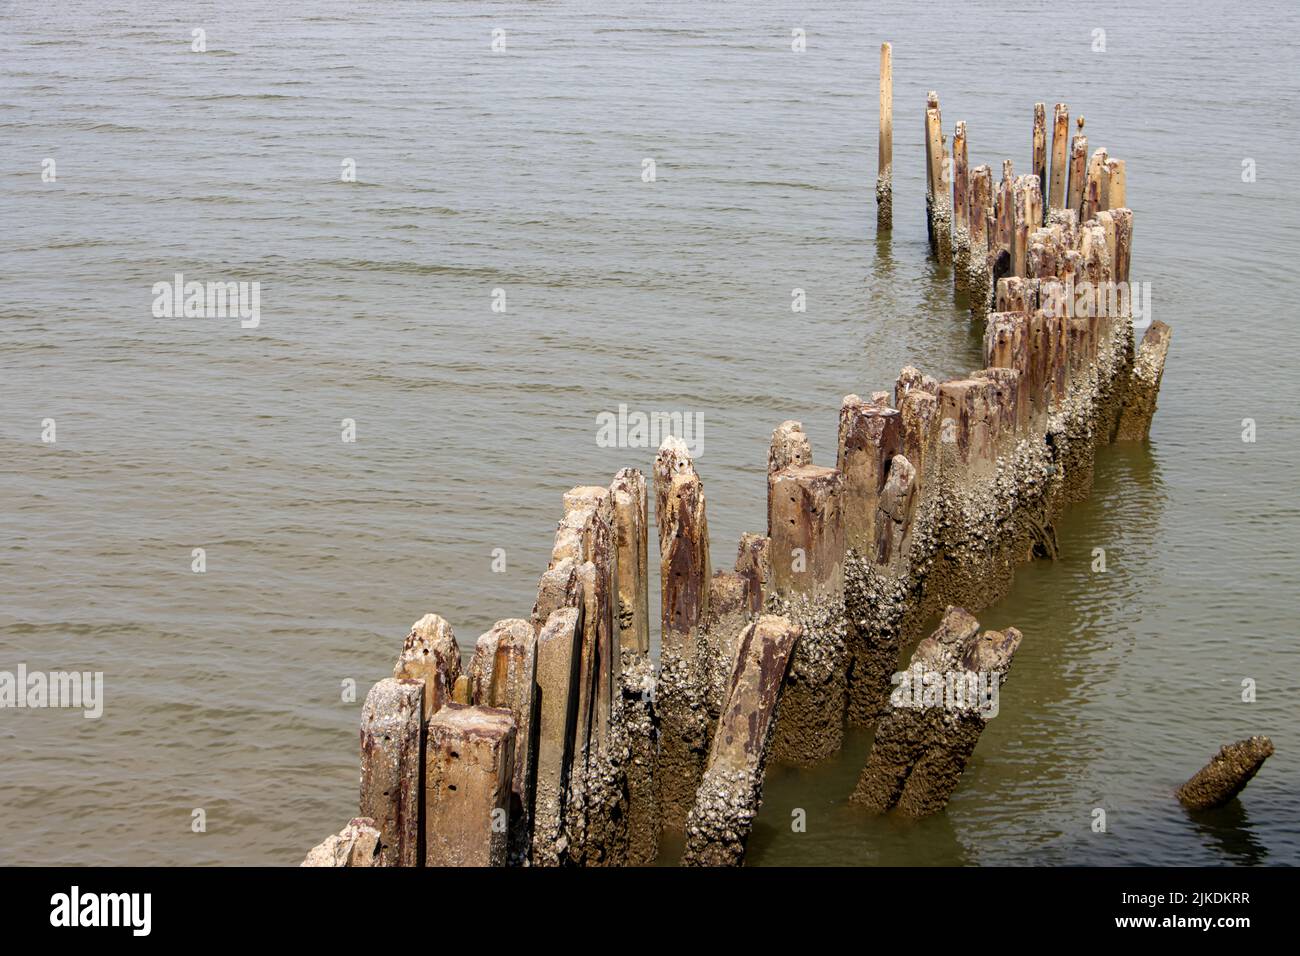 Las columnas de hormigón erosionado sobresalen del agua en la orilla del mar Foto de stock